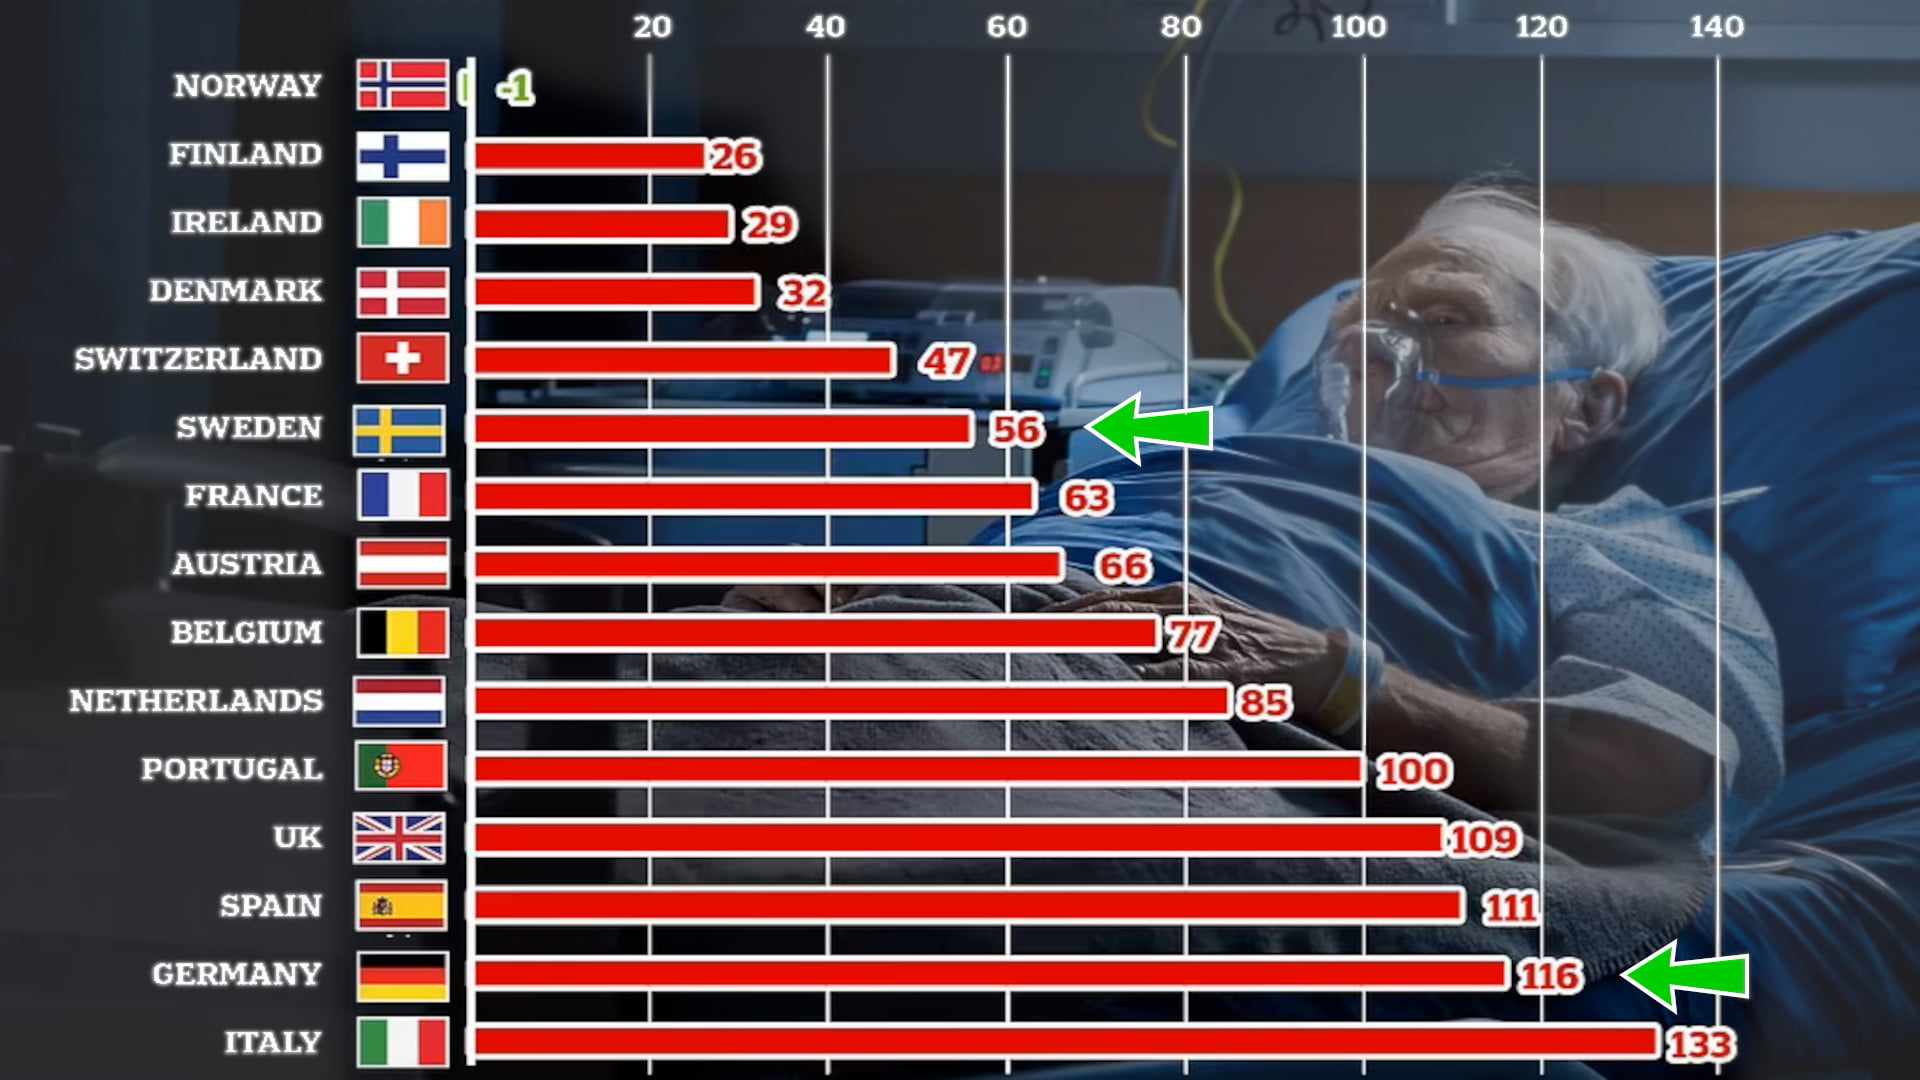 Übersterblichkeit im europäischen Vergleich